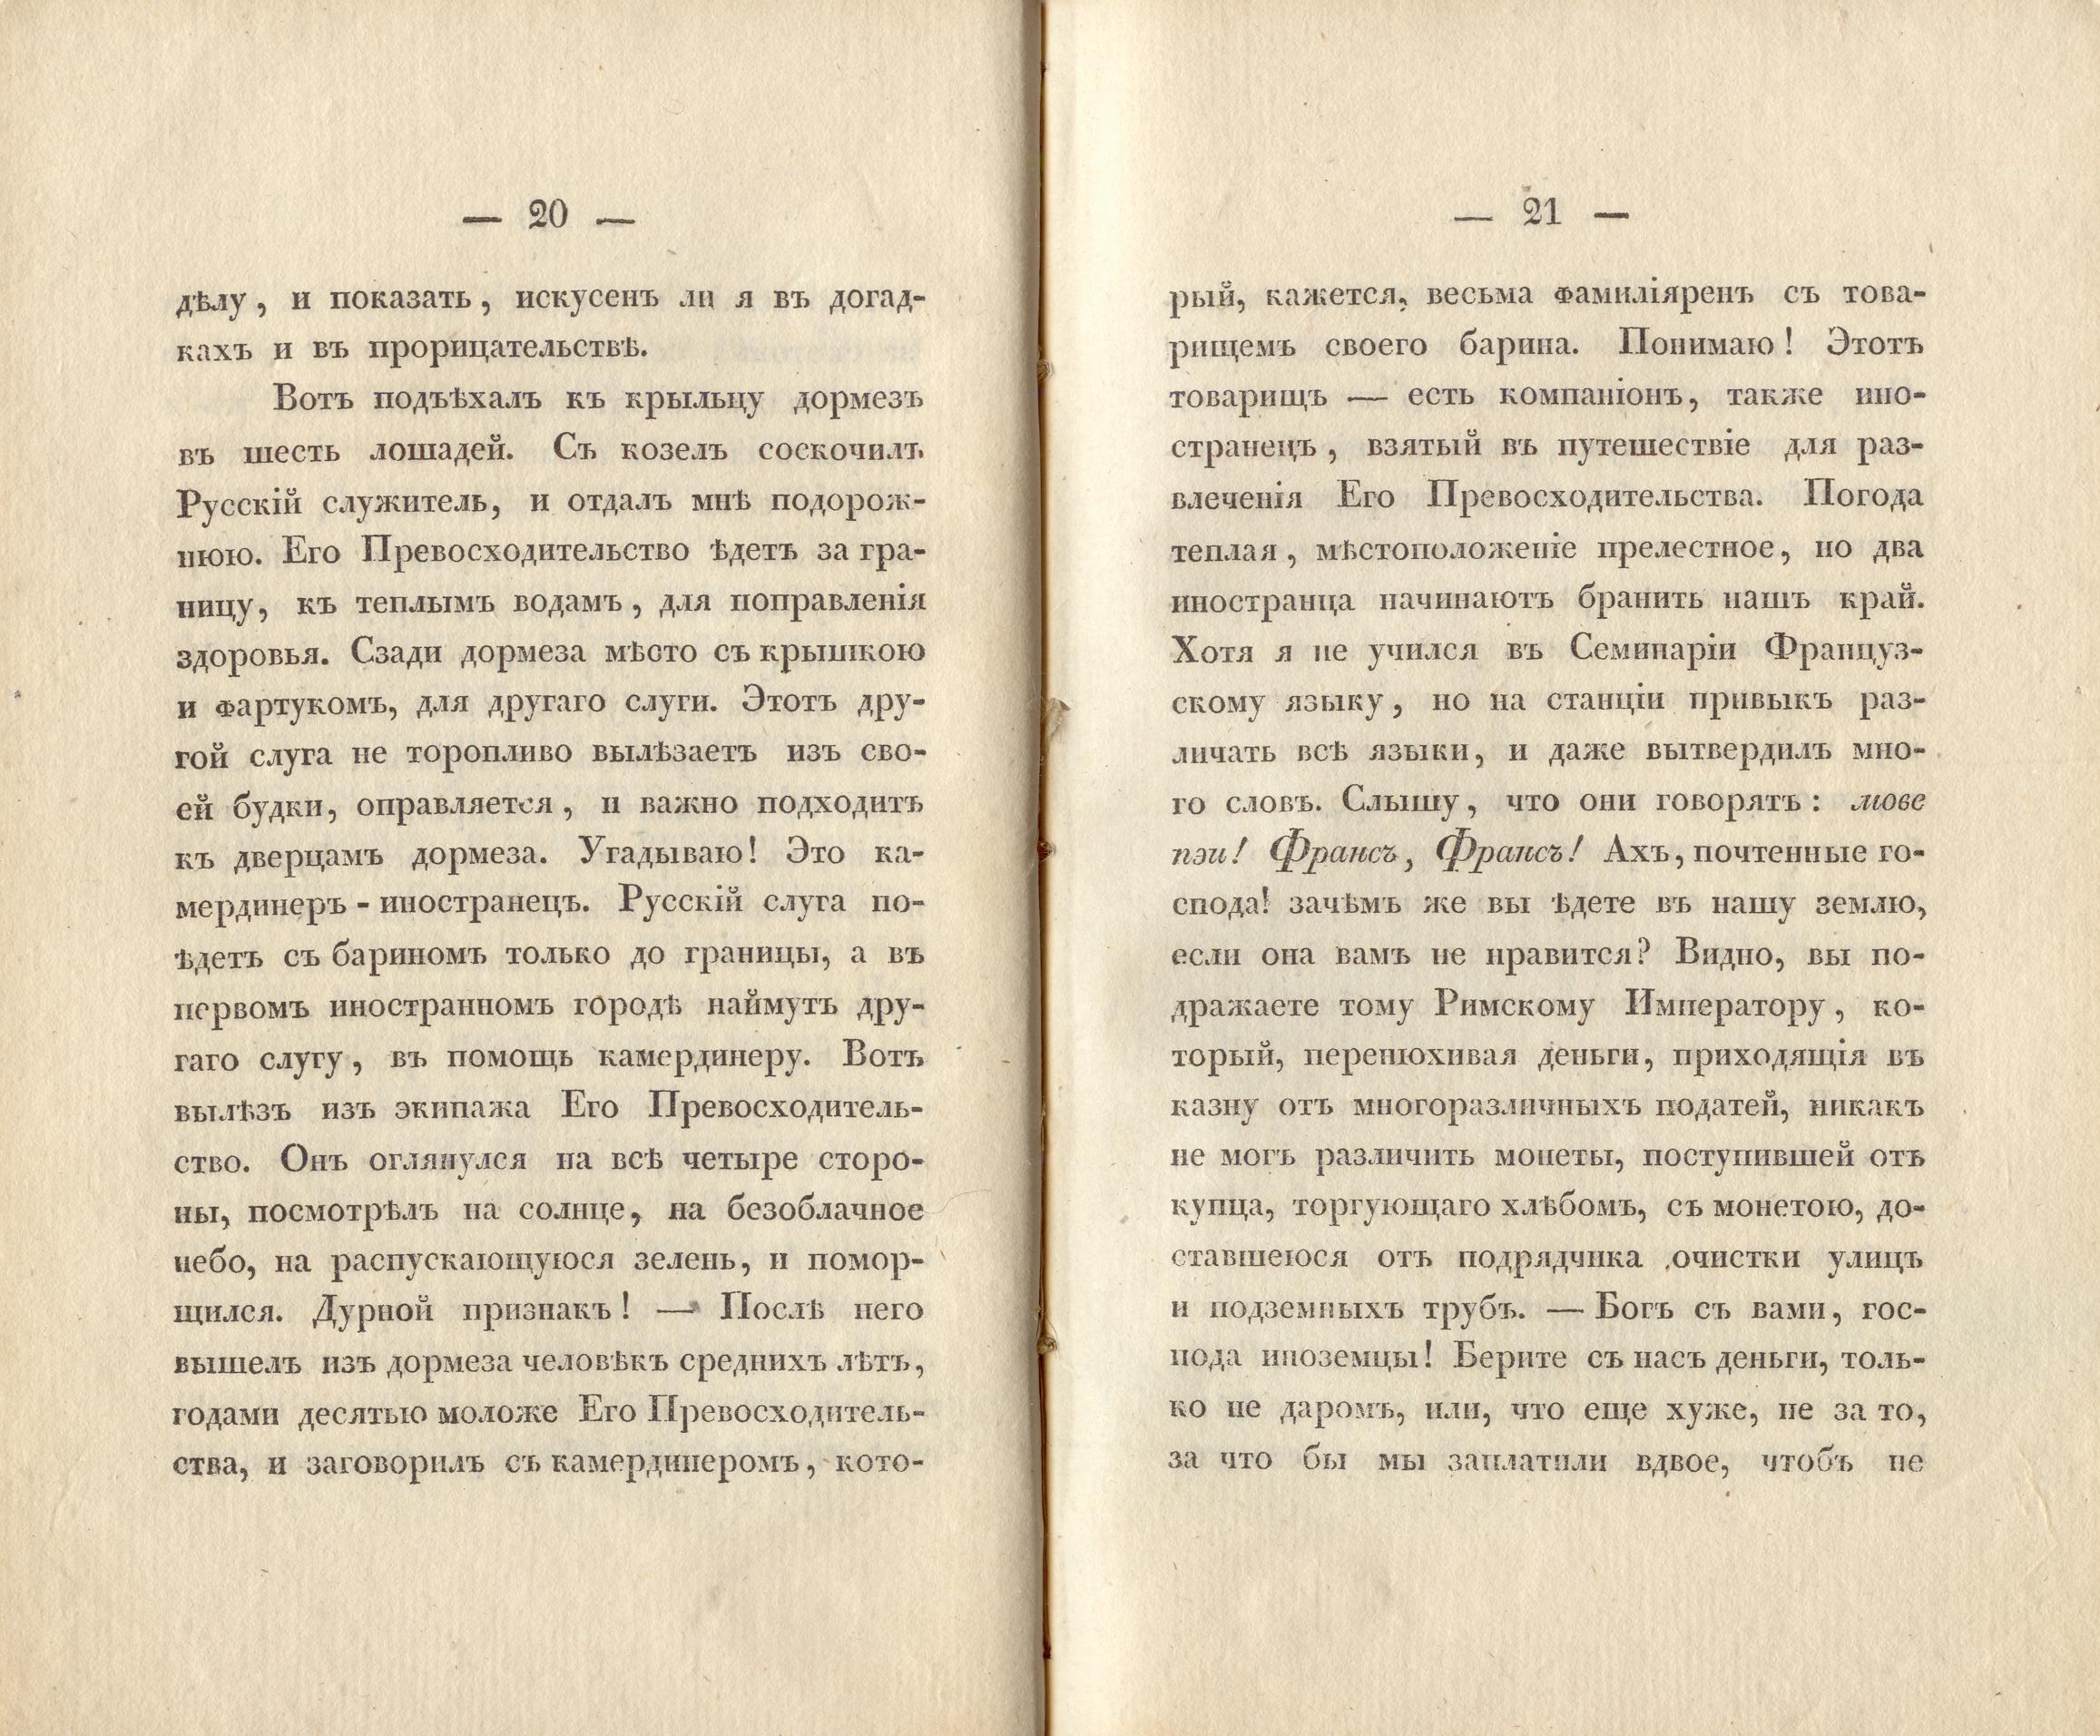 Сочиненія [2] (1836) | 13. (20-21) Основной текст